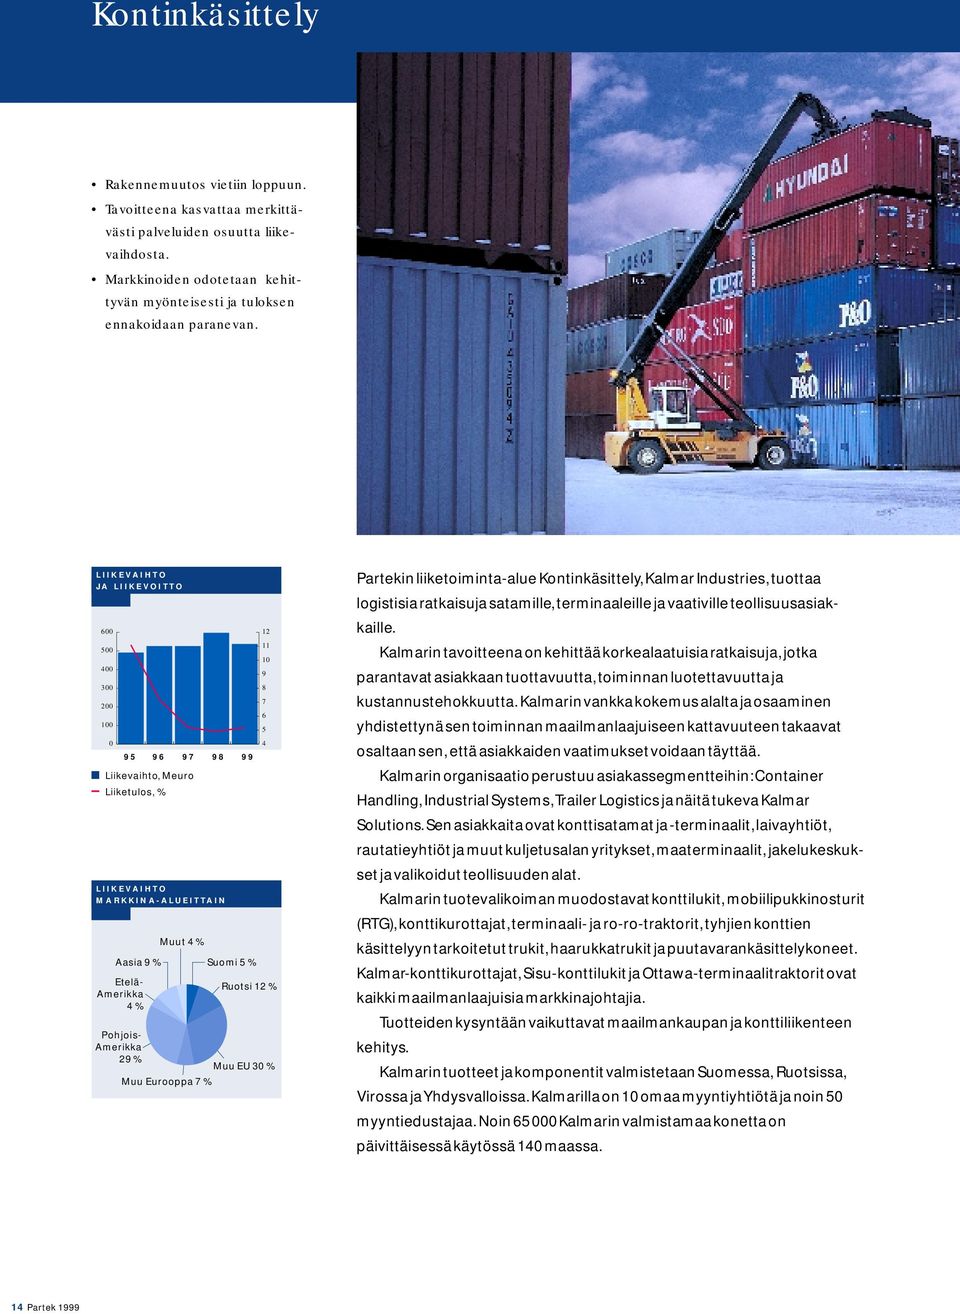 5 4 Ruotsi 12 % Pohjois- Amerikka 29 % Muu EU 30 % Muu Eurooppa 7 % Partekin liiketoiminta-alue Kontinkäsittely, Kalmar Industries, tuottaa logistisia ratkaisuja satamille, terminaaleille ja